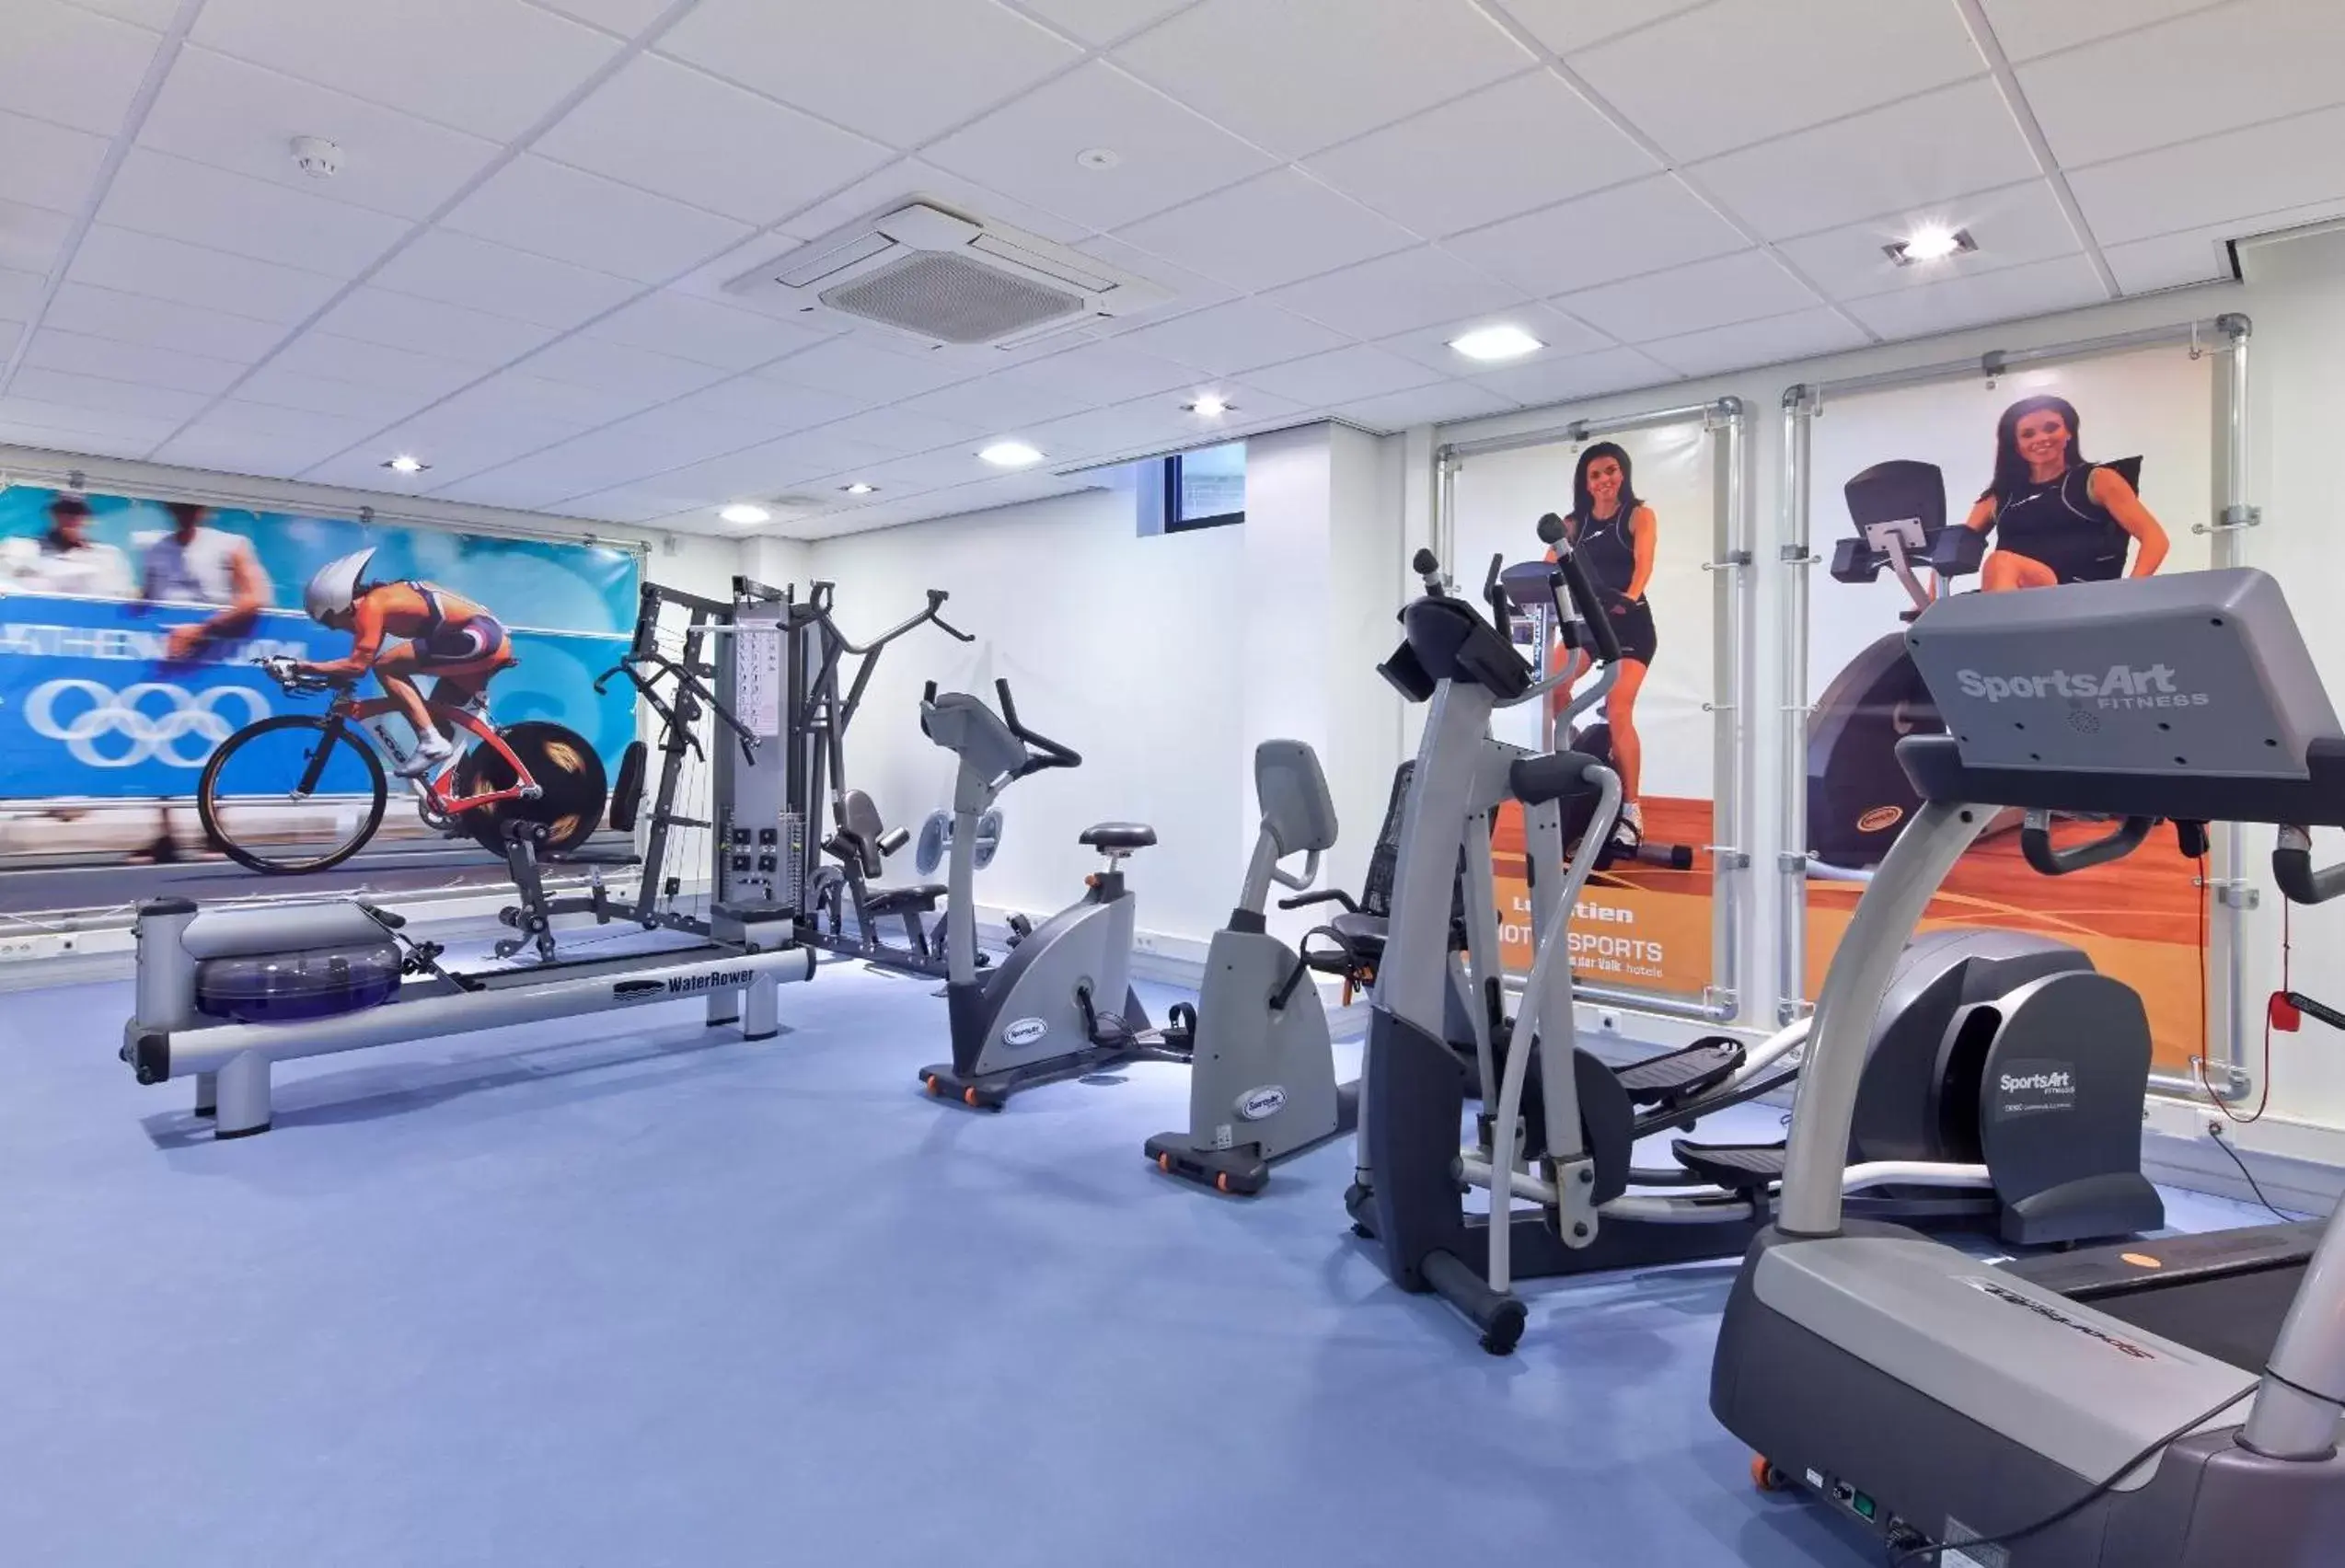 Fitness centre/facilities, Fitness Center/Facilities in Van der Valk Hotel Leiden